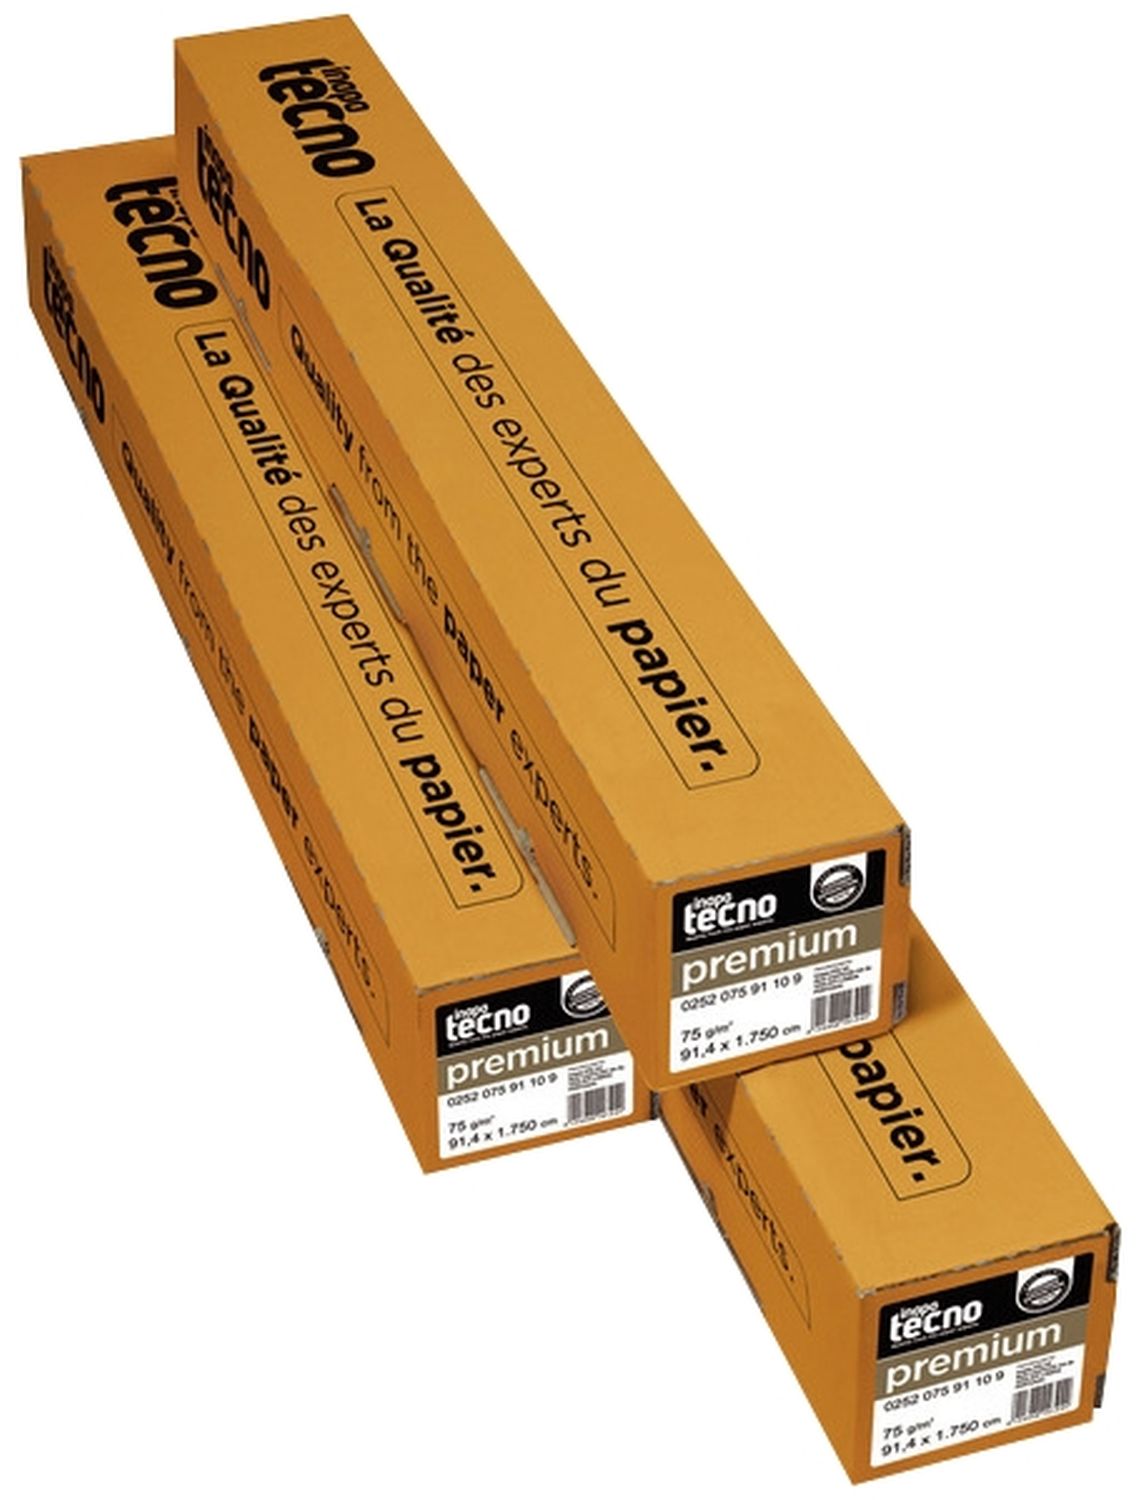 Plotterpapier tecno premium 41000000160 für Großformatdruck, 594 mm x 175 m (A1), 75 g/qm, Kern-Ø 7,50 cm, 2 Rollen